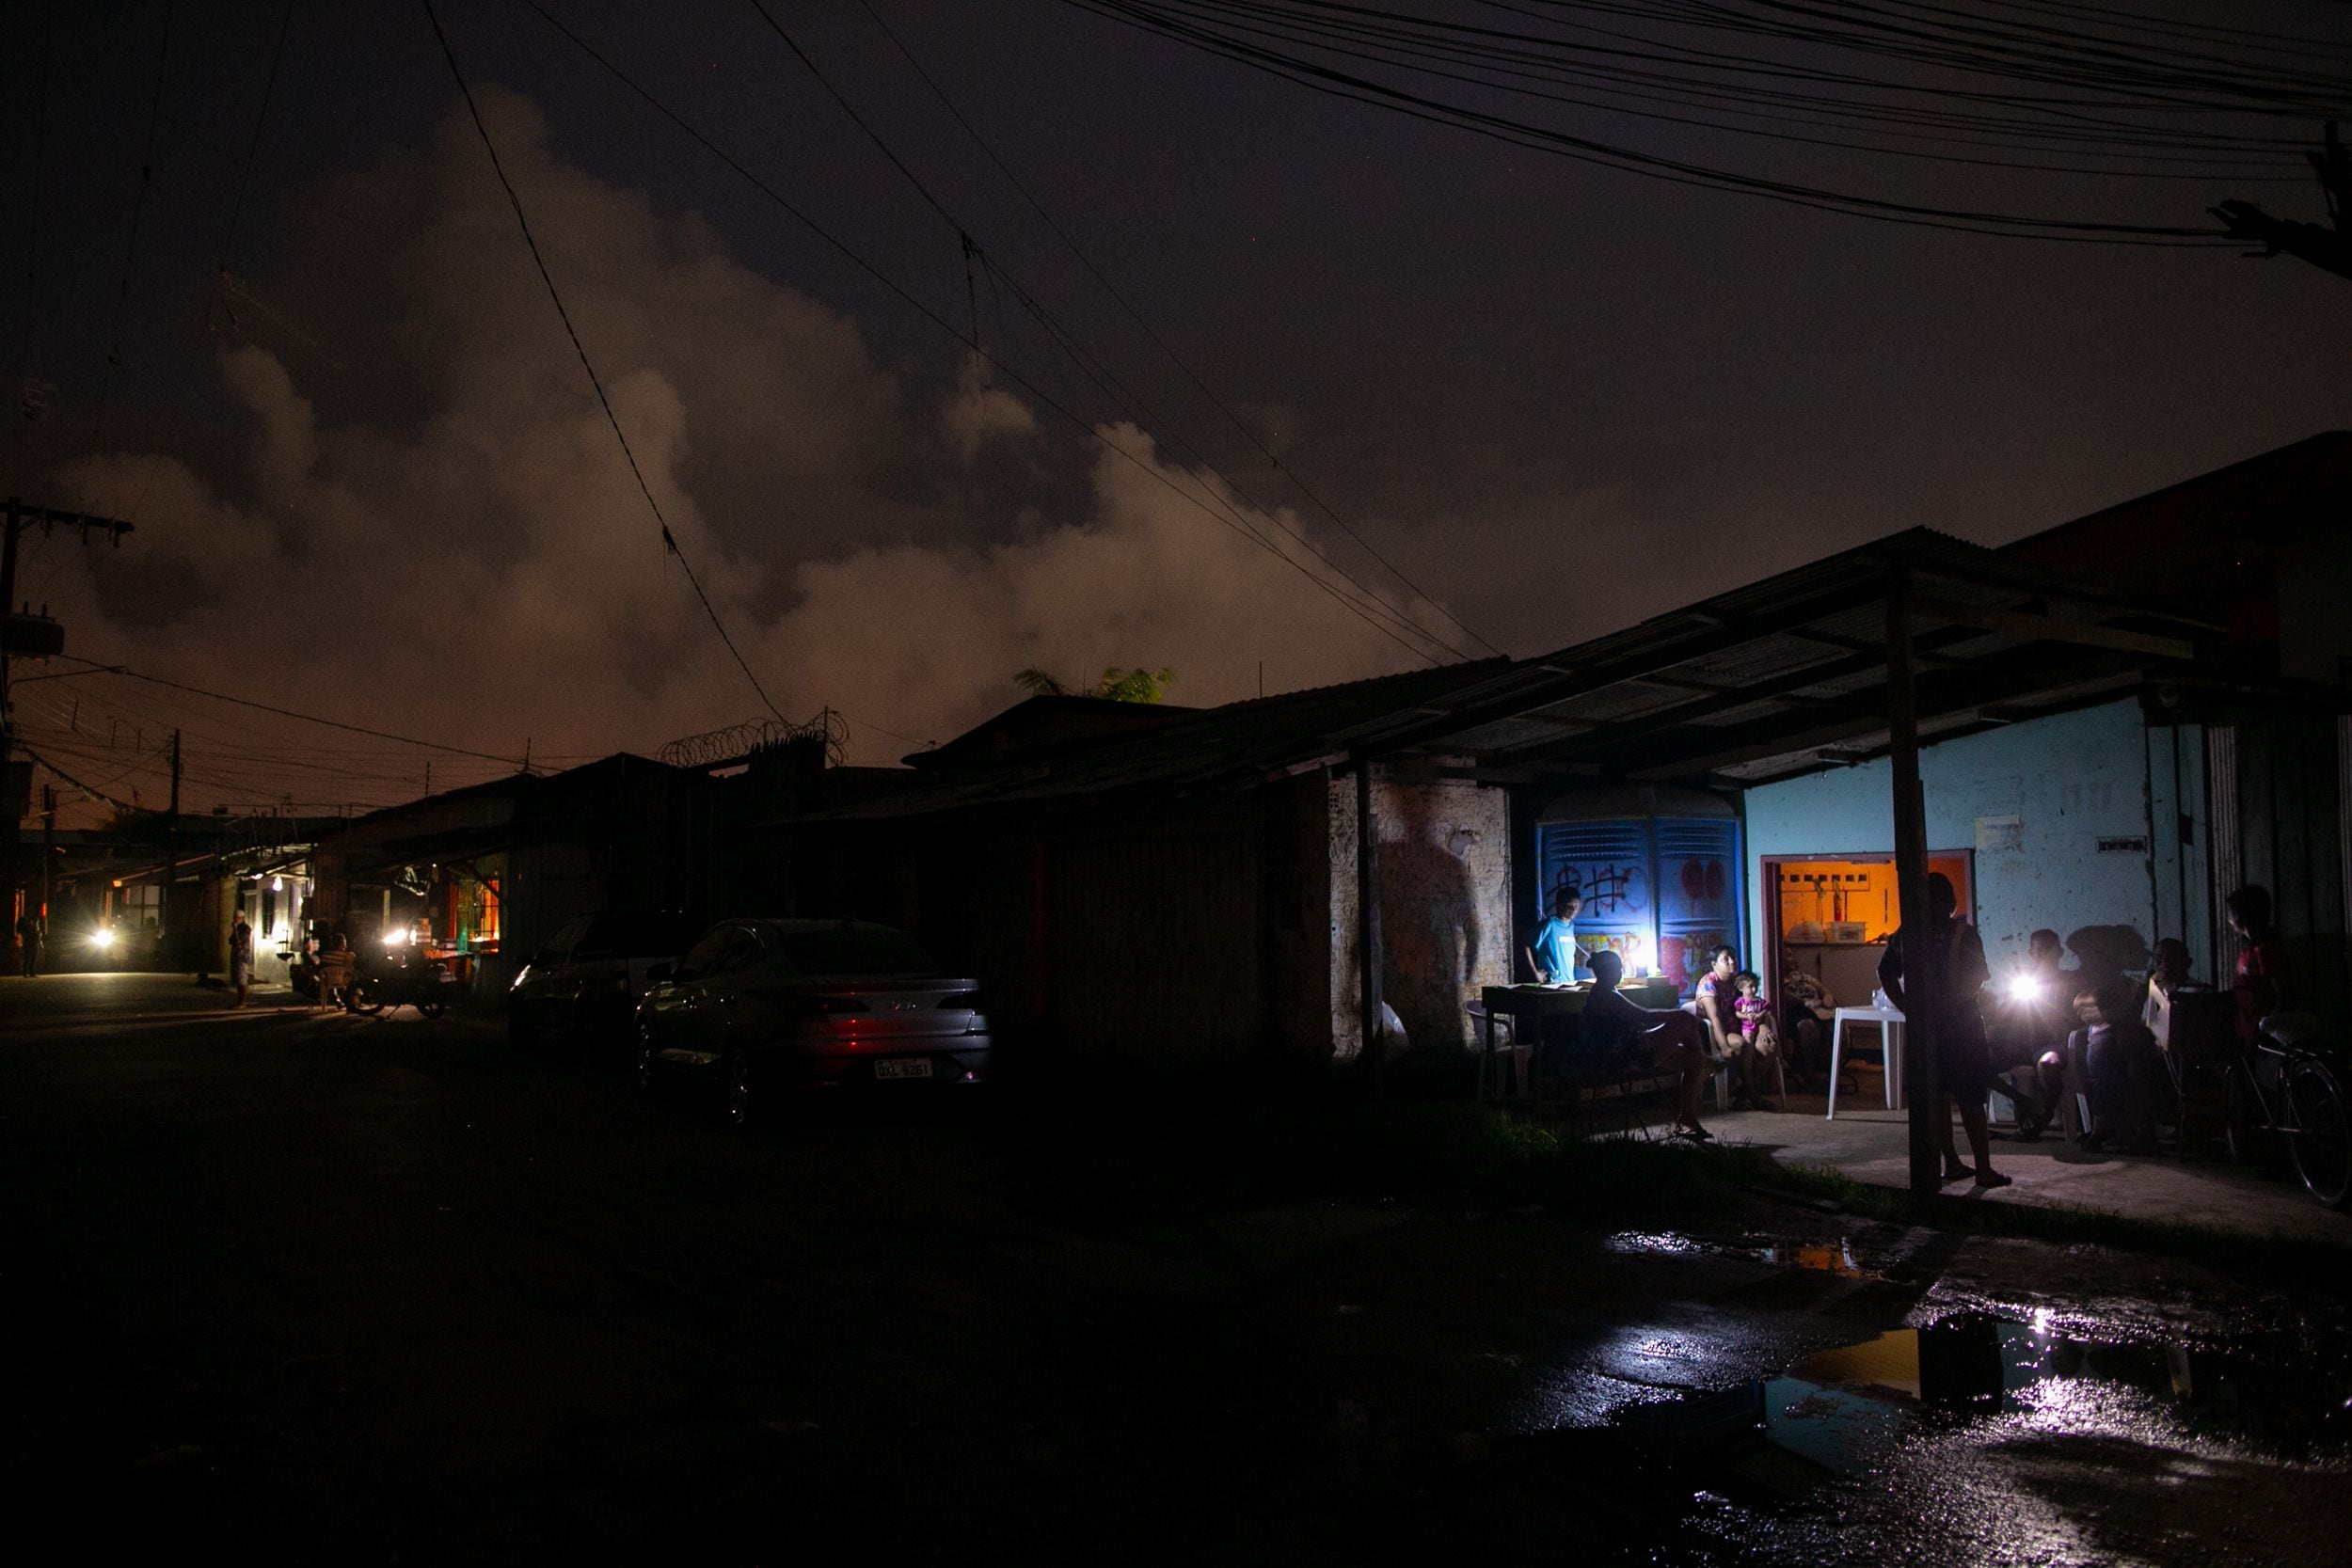 Durante a crise do apagão de energia no estado do Amapá e a pandemia de Coronavirus, moradores da Baixada Pará, em Macapá, se organizam para suprir as necessidades básicas e as demandas da favela.